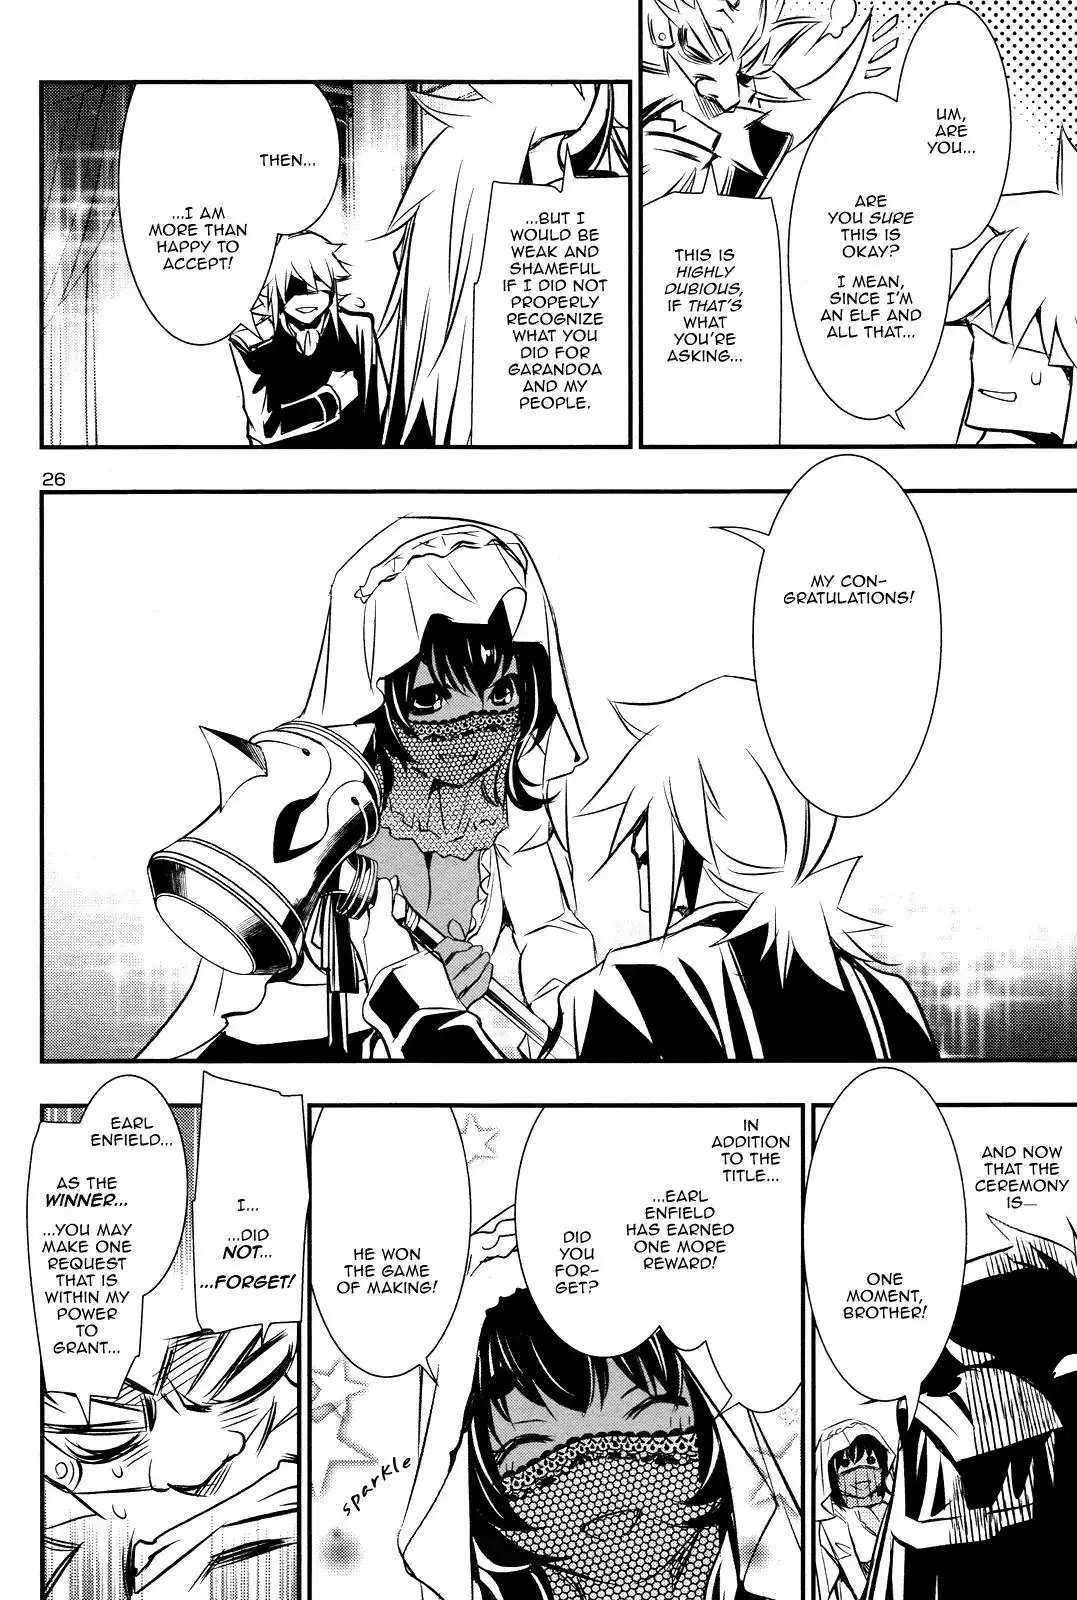 Shinju no Nectar - 13 page 24